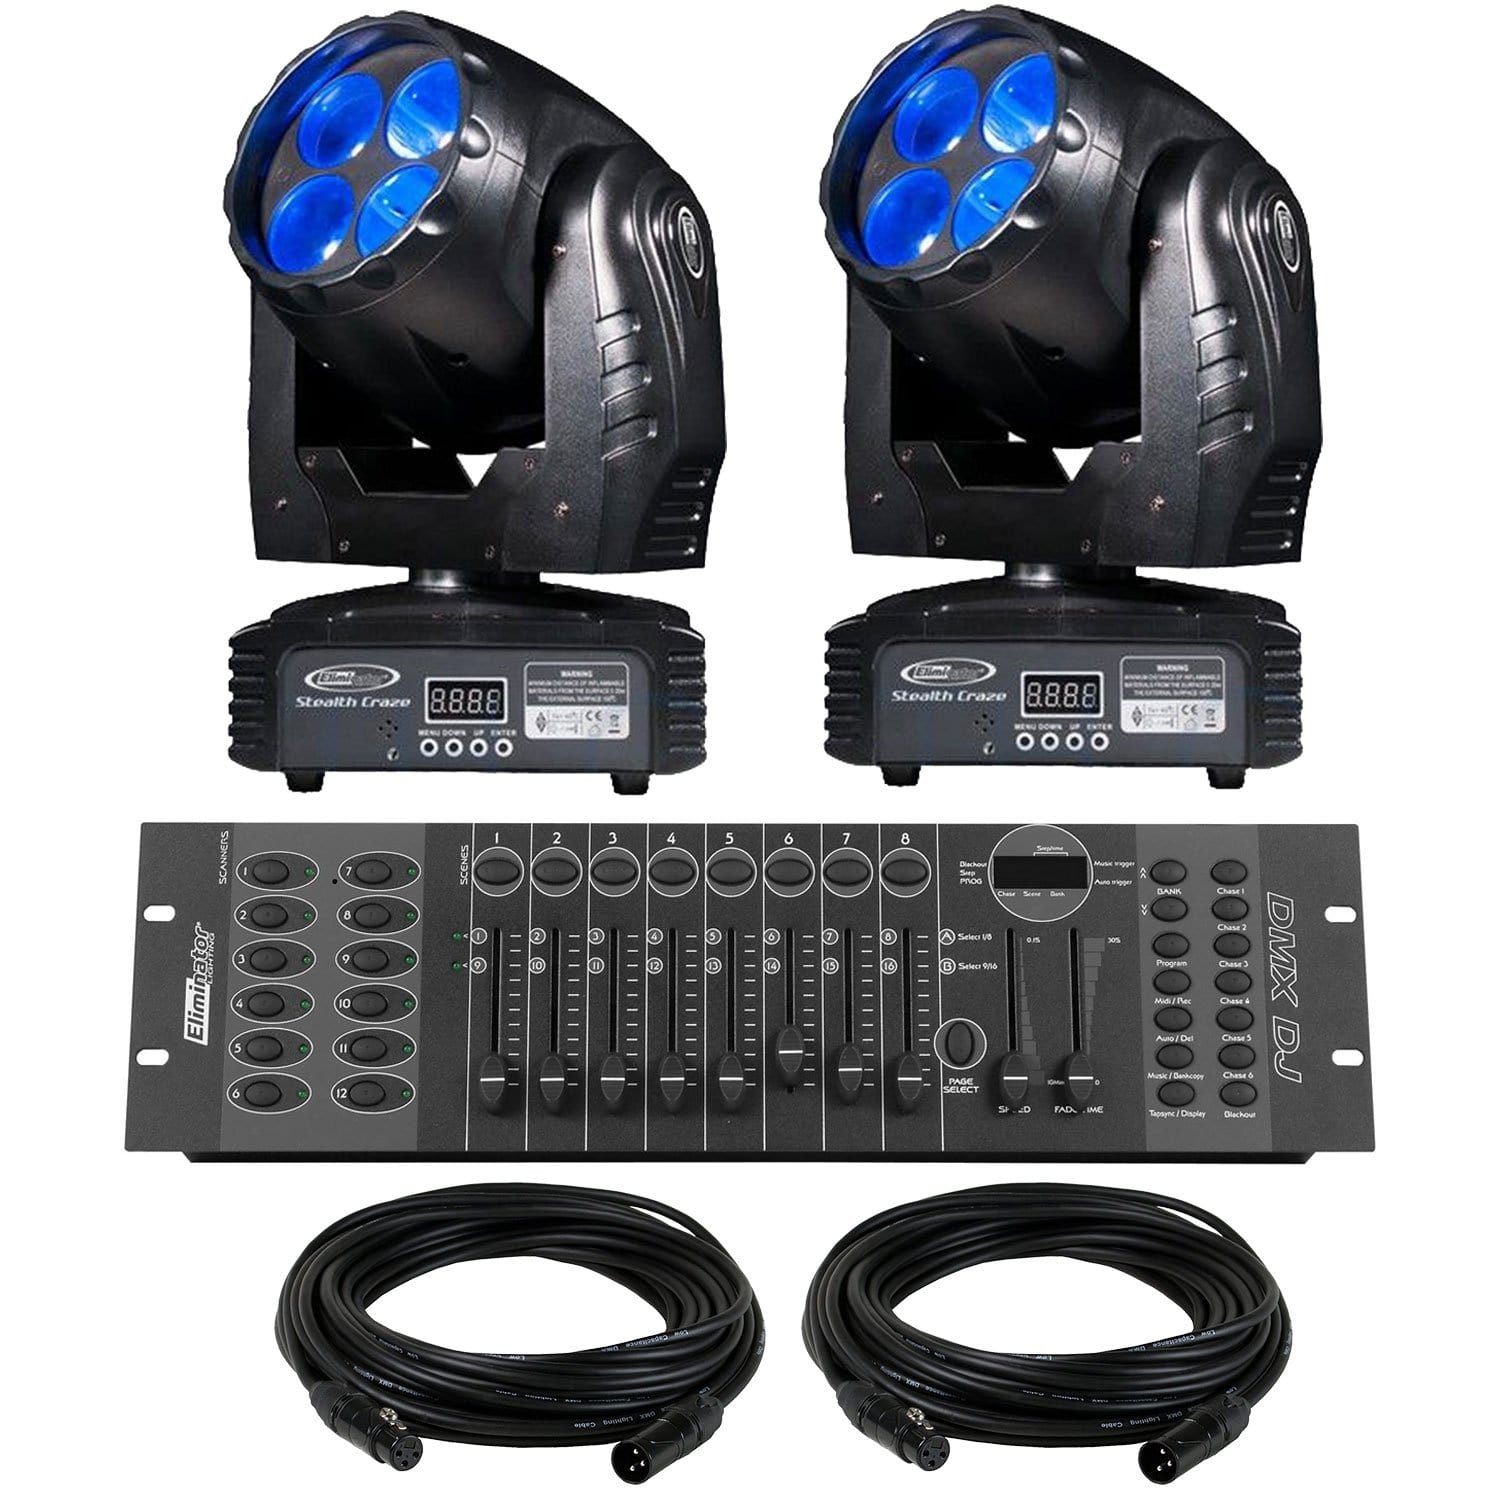 Eliminator Stealth Craze LED Moving Head 2-Pack Lighting System - PSSL ProSound and Stage Lighting